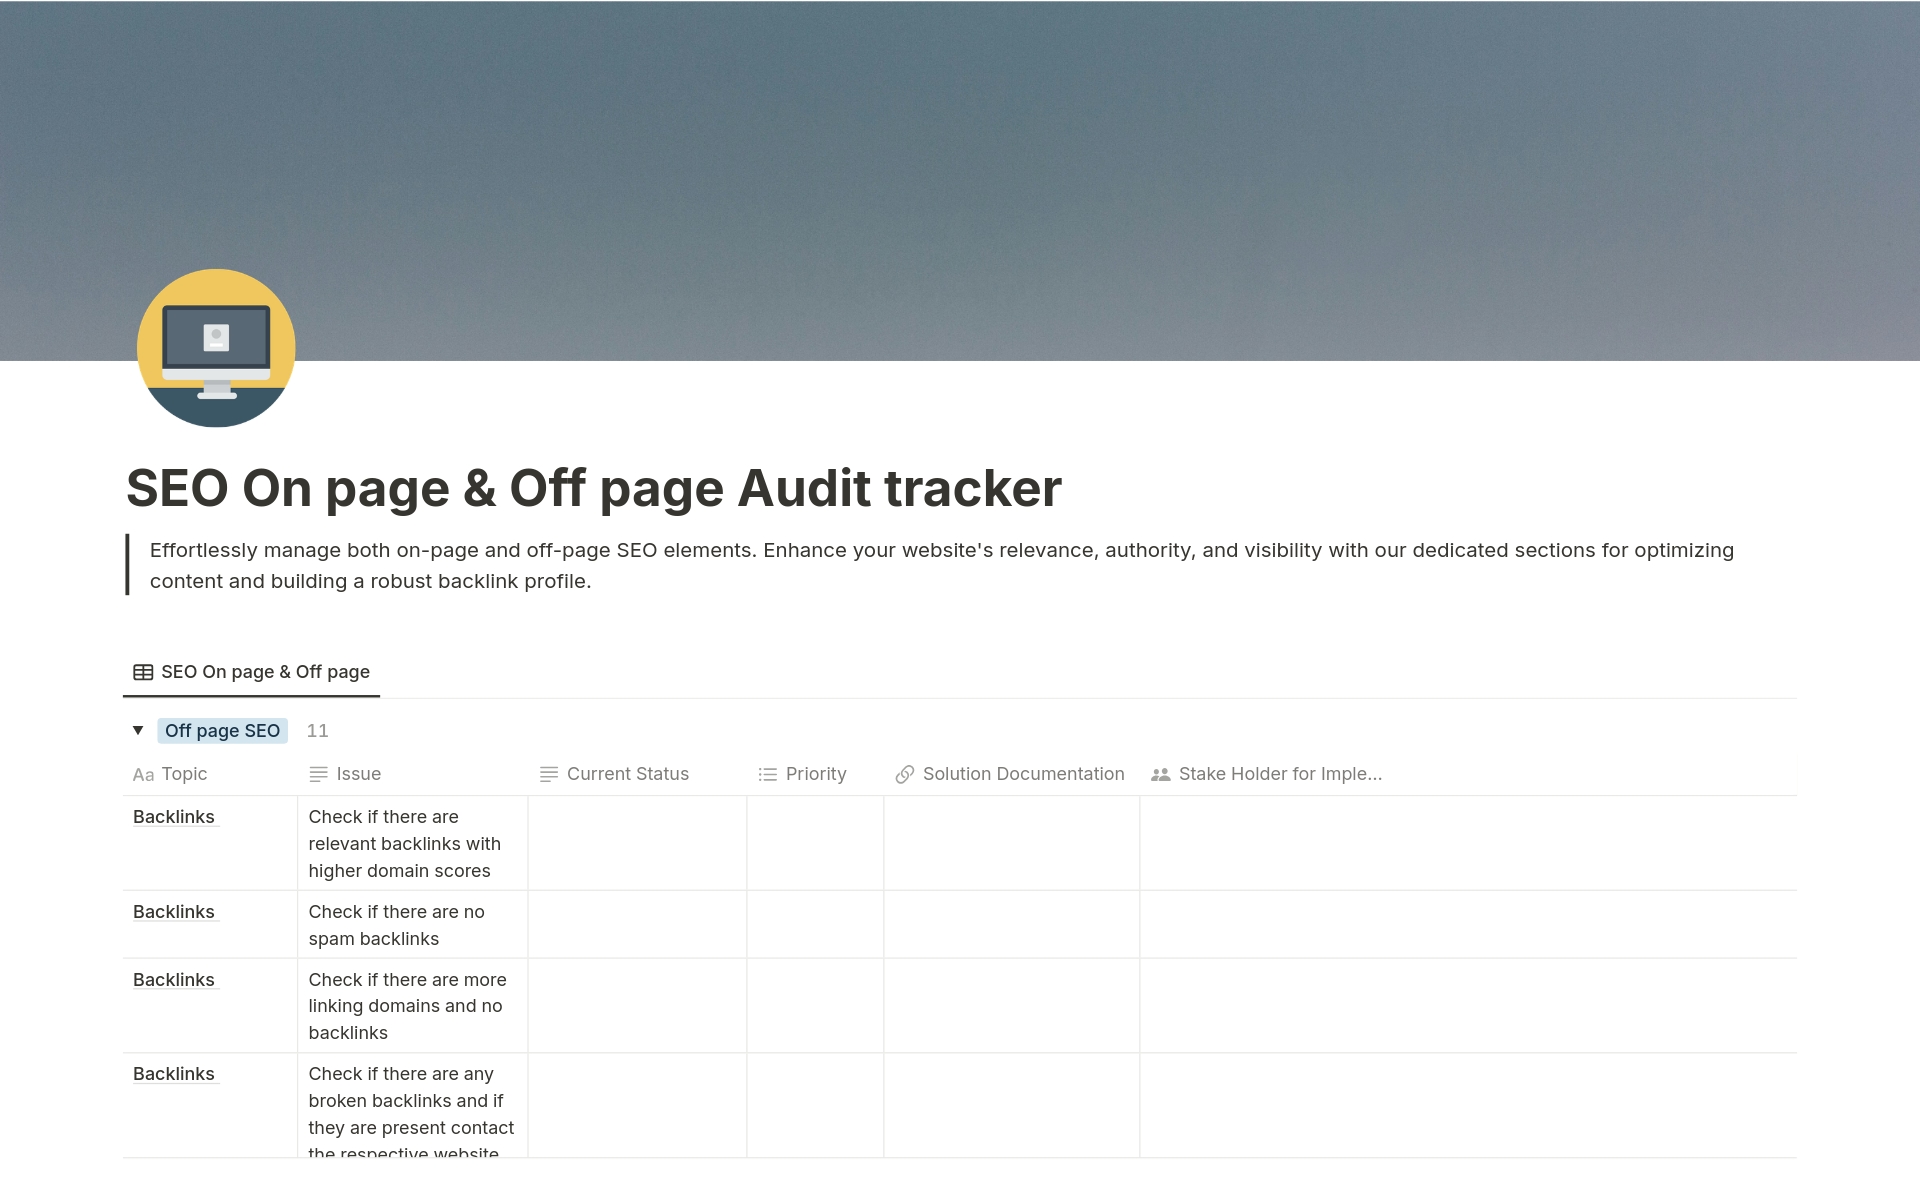 Uma prévia do modelo para SEO On page & Off page Audit tracker 